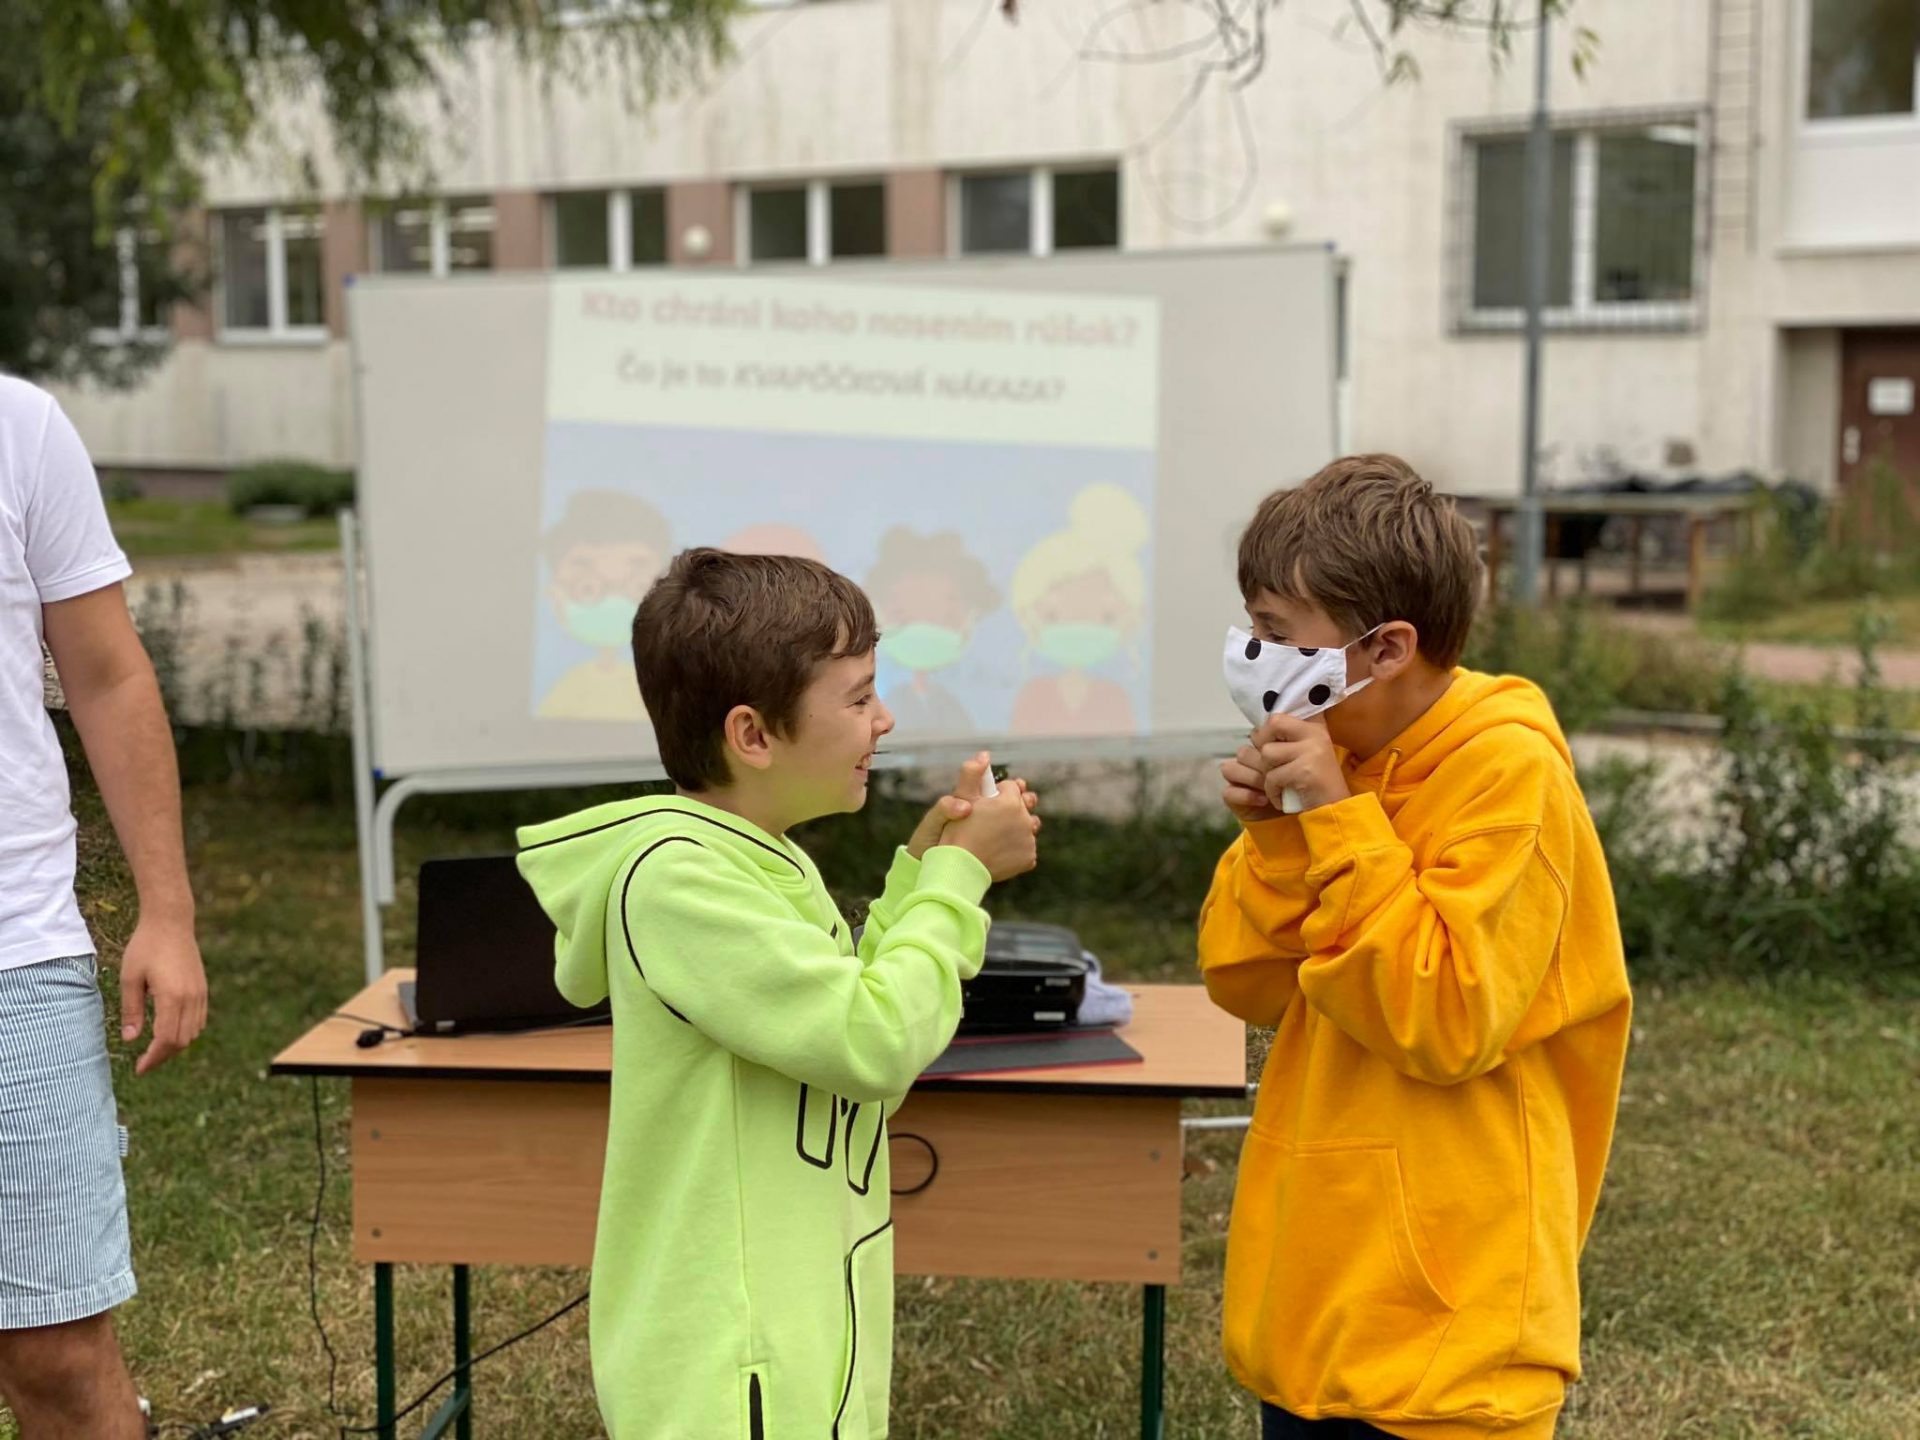 m2 Aj v Komárne sa bojuje proti hoaxom: Finalista súťaže Učiteľ Slovenska 2019 vysvetľuje význam nosenia rúšok